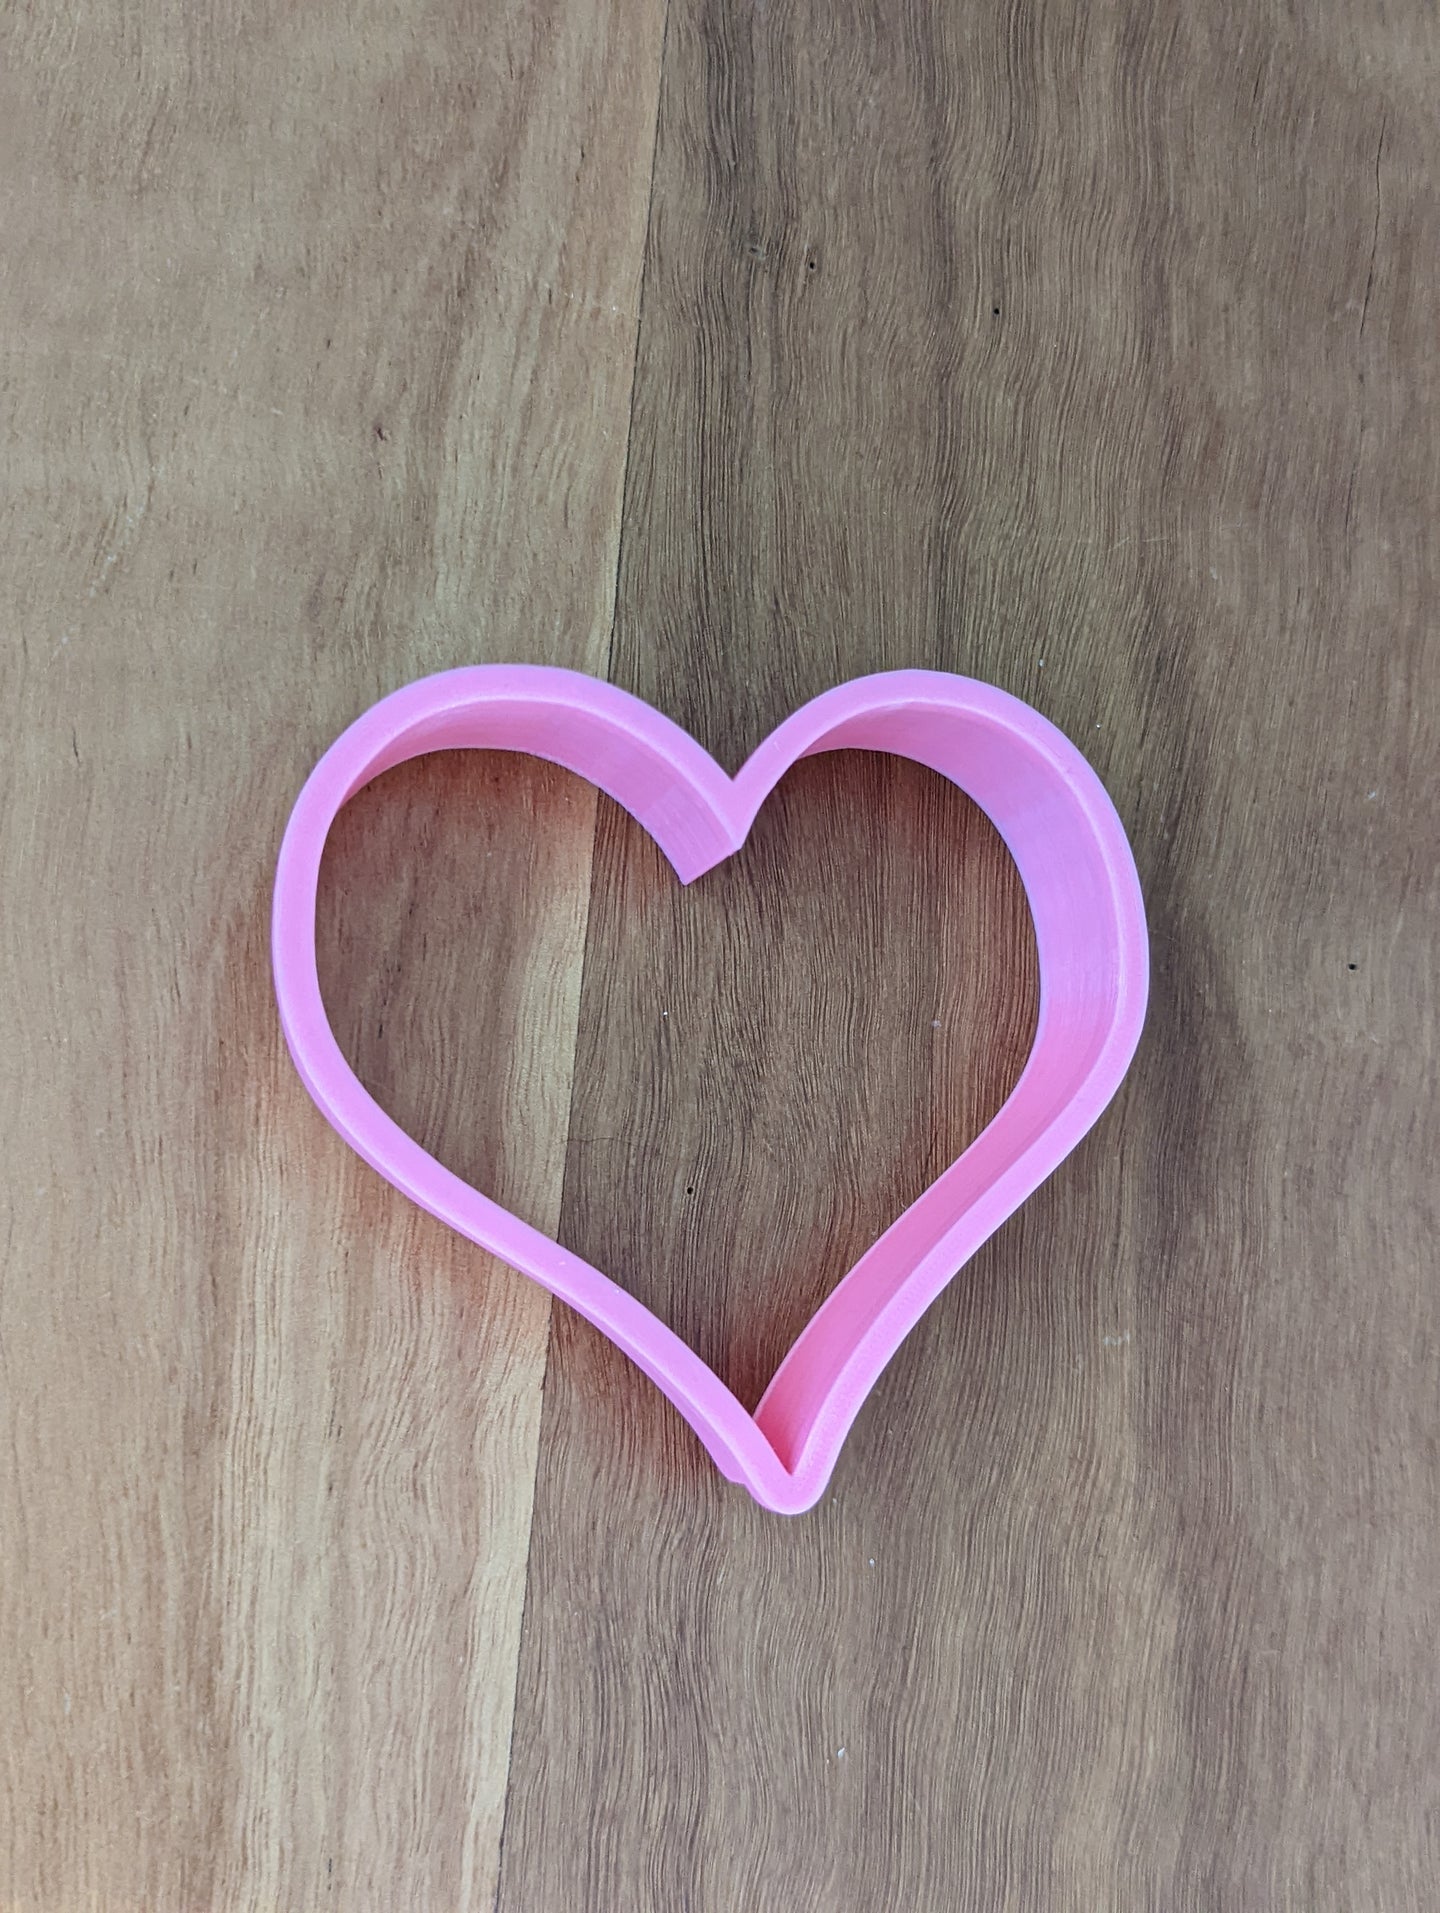 10cm Heart Cookie Cutter